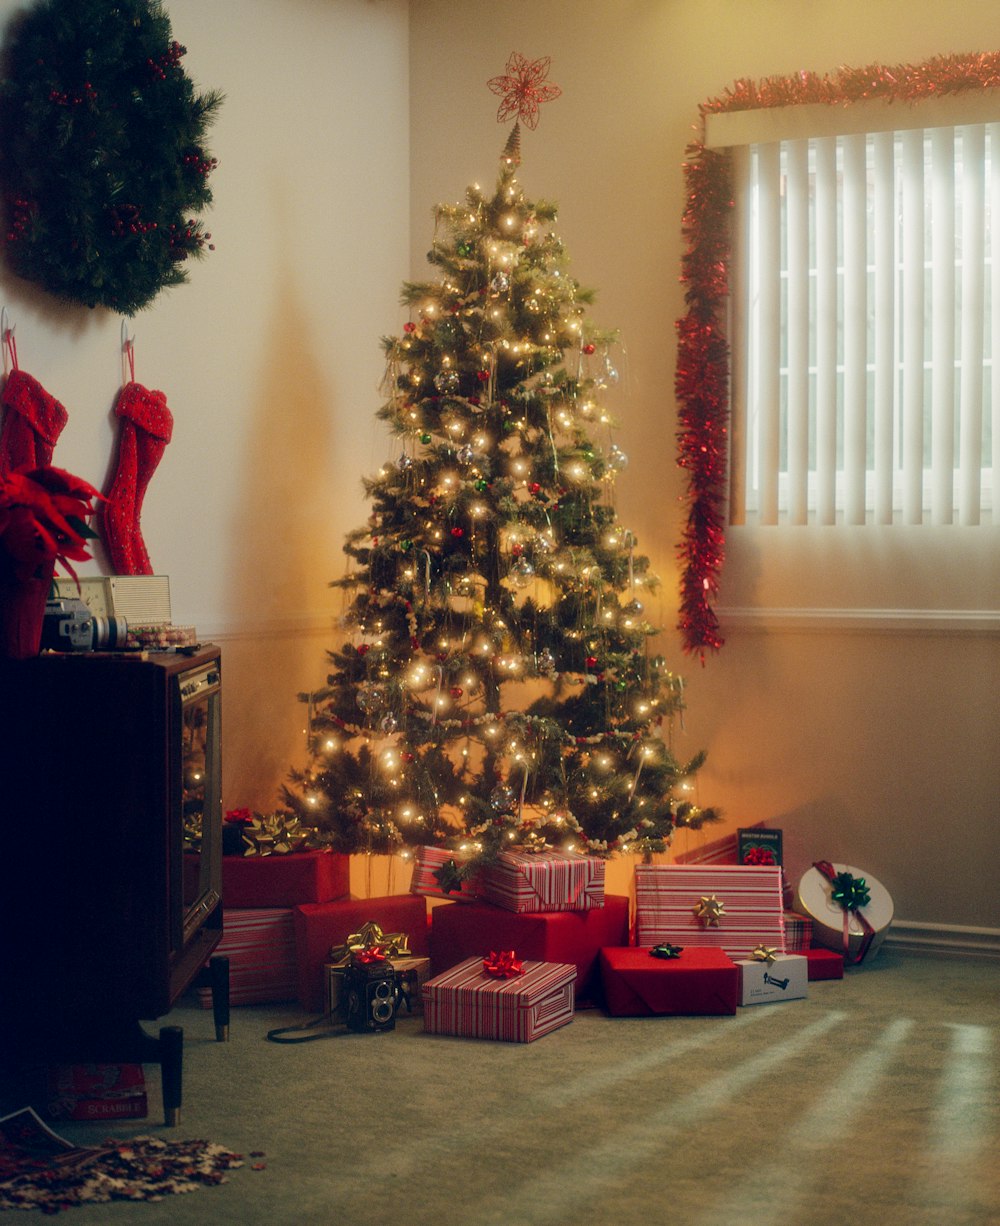 Un árbol de Navidad con regalos debajo frente a una ventana